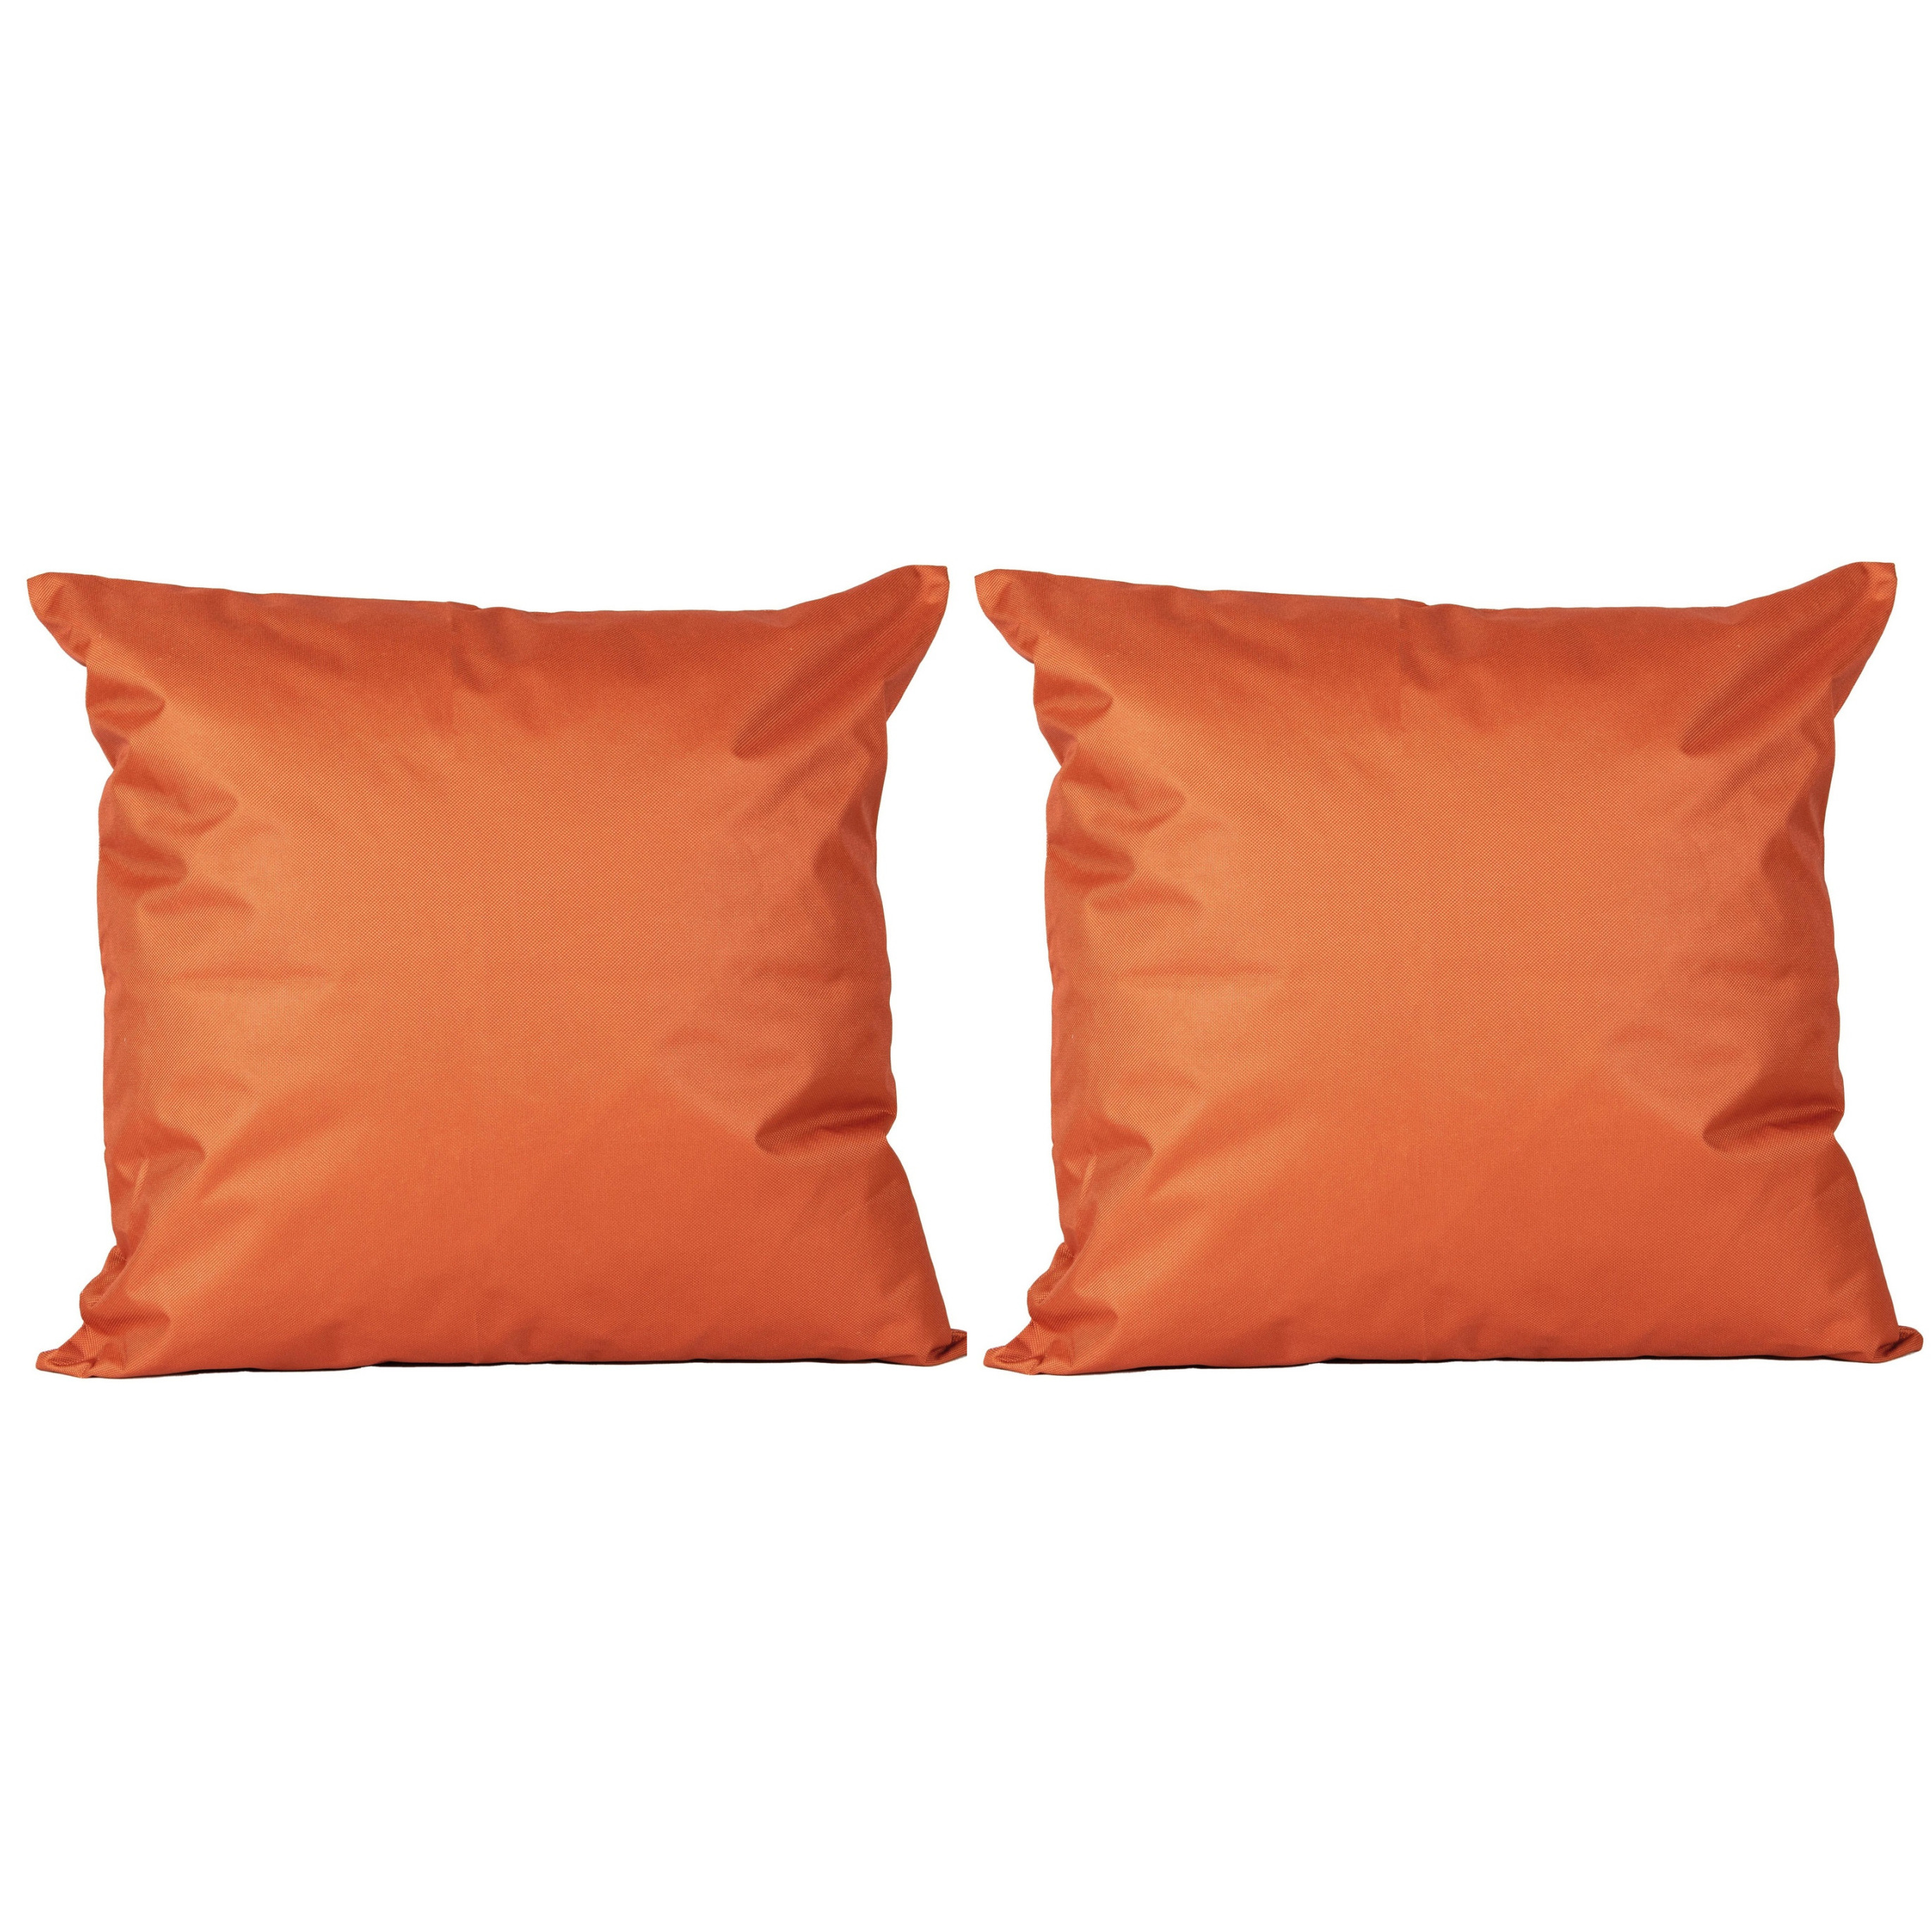 4x Bank-sier kussens voor binnen en buiten in de kleur oranje 45 x 45 cm